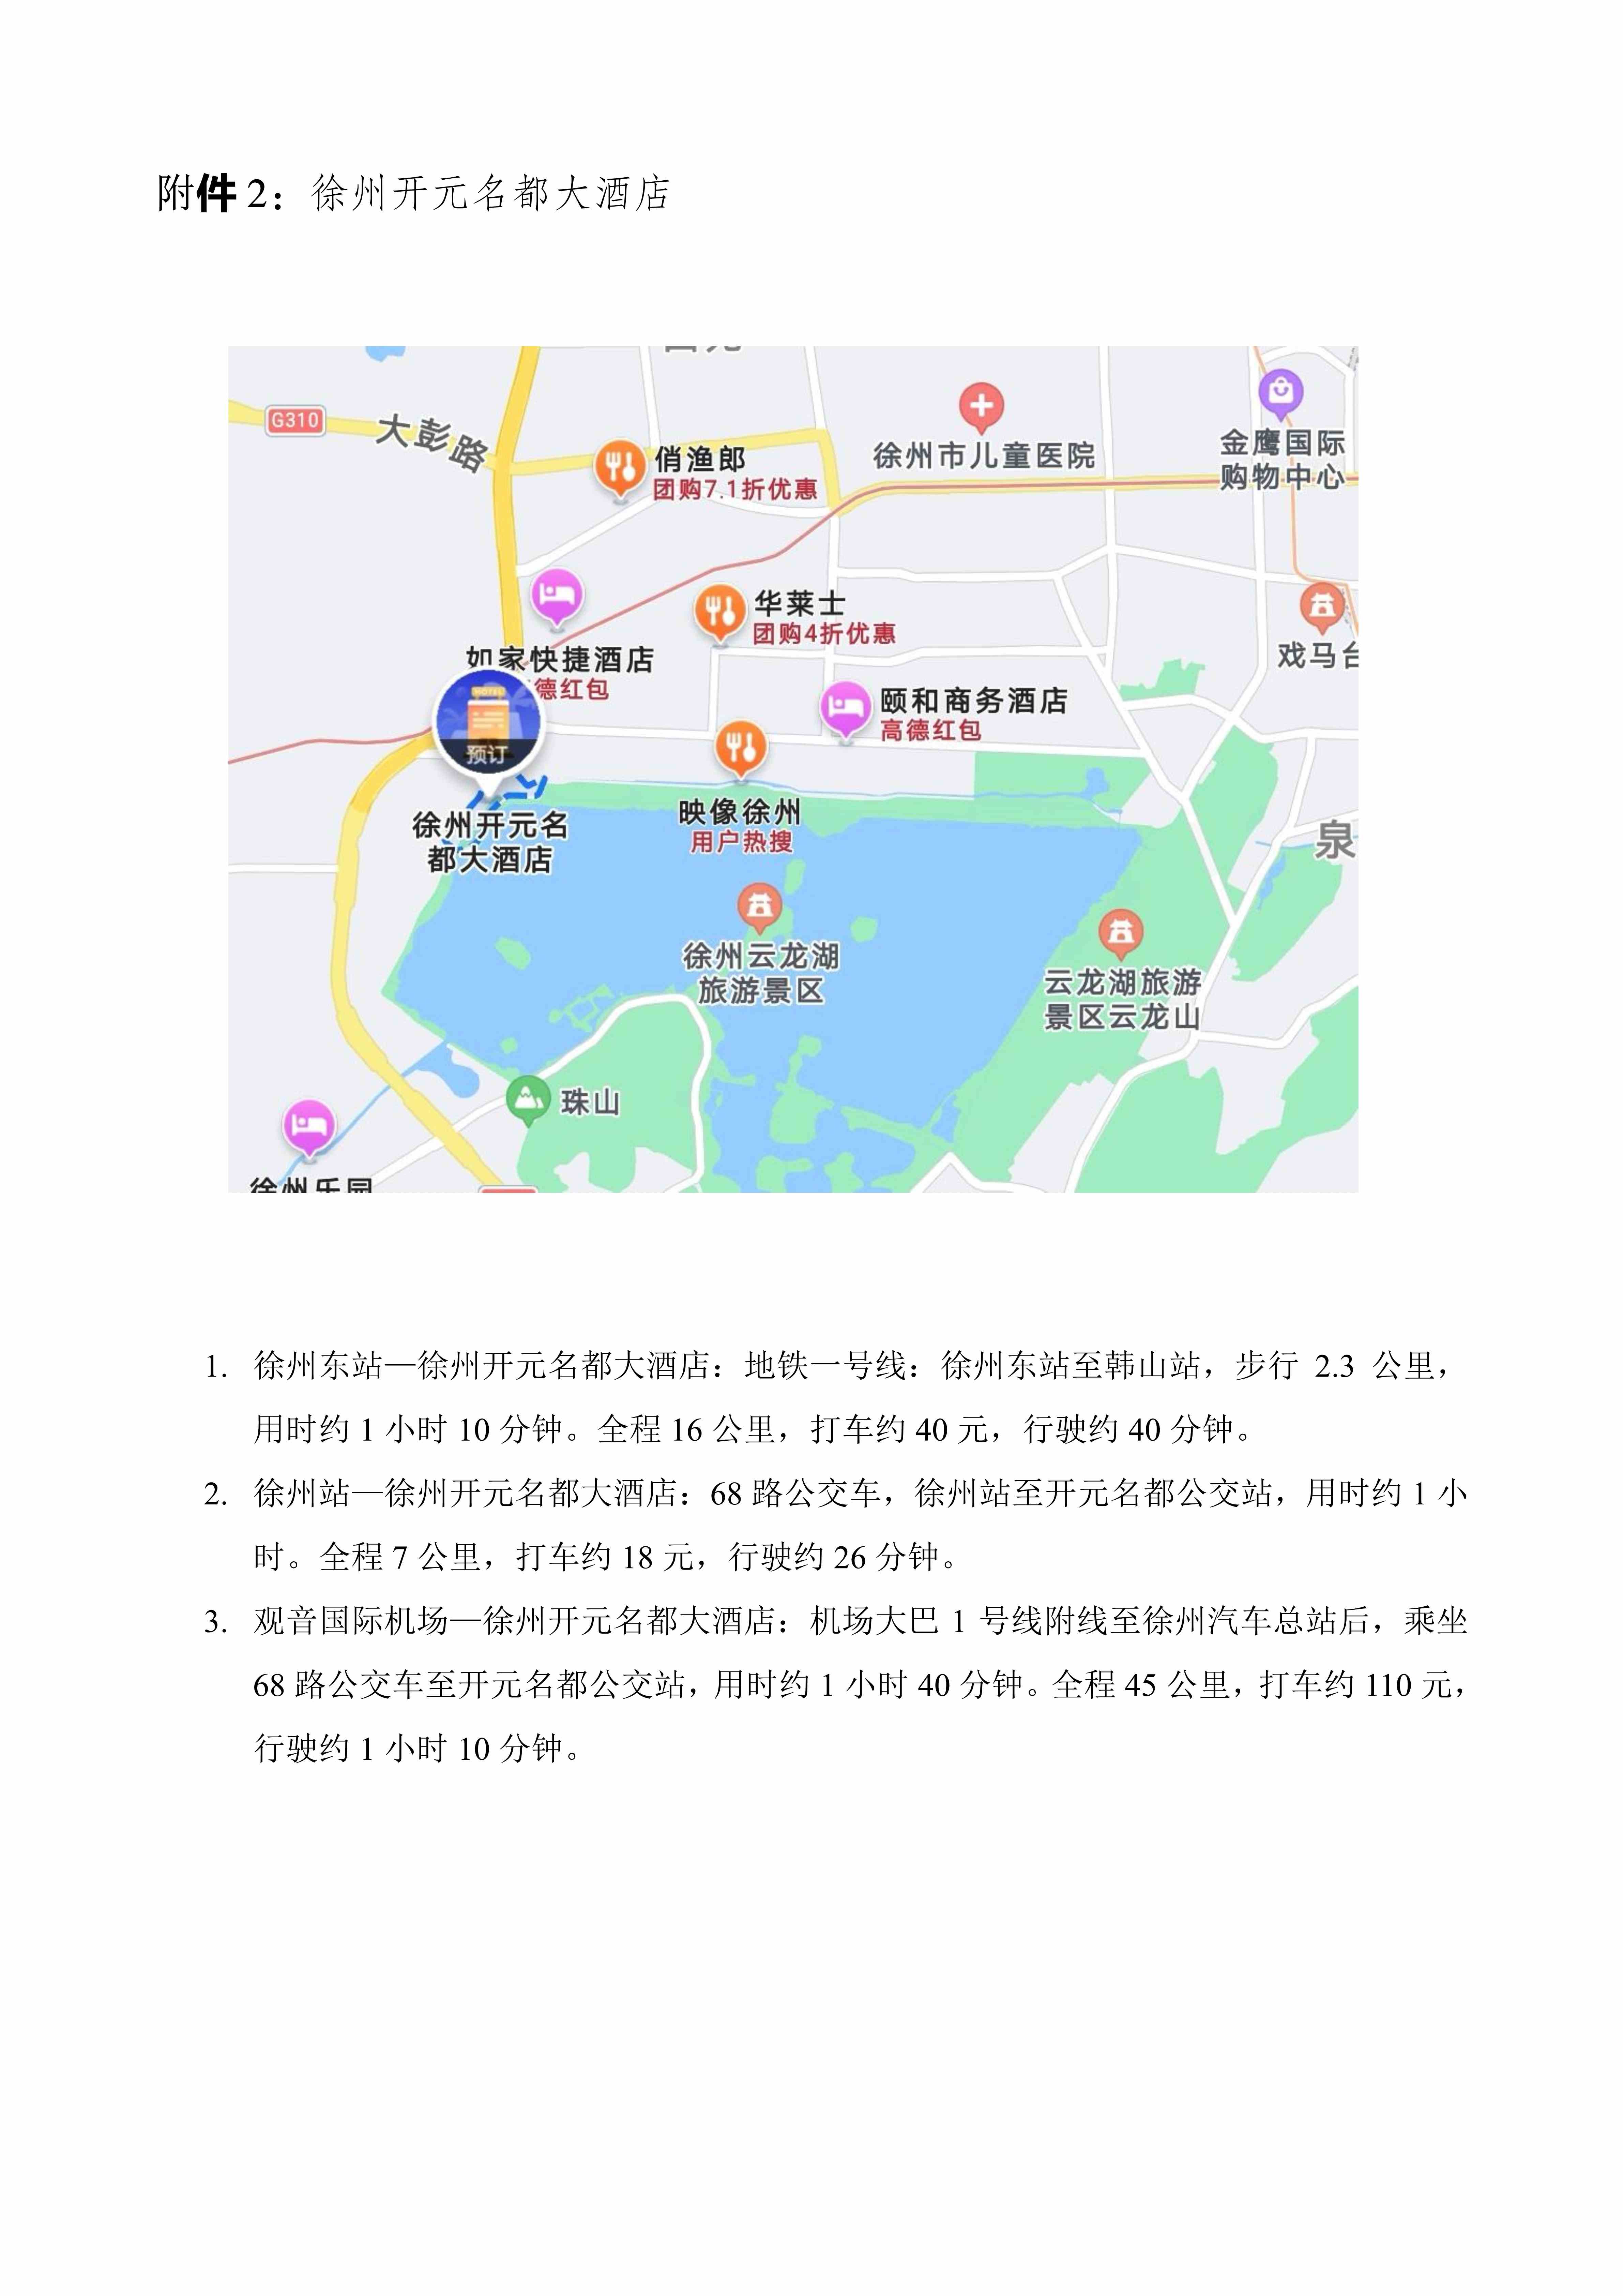 20210701江苏省第三届儿保发育行为年会正式通知(1)_5_pro.jpg